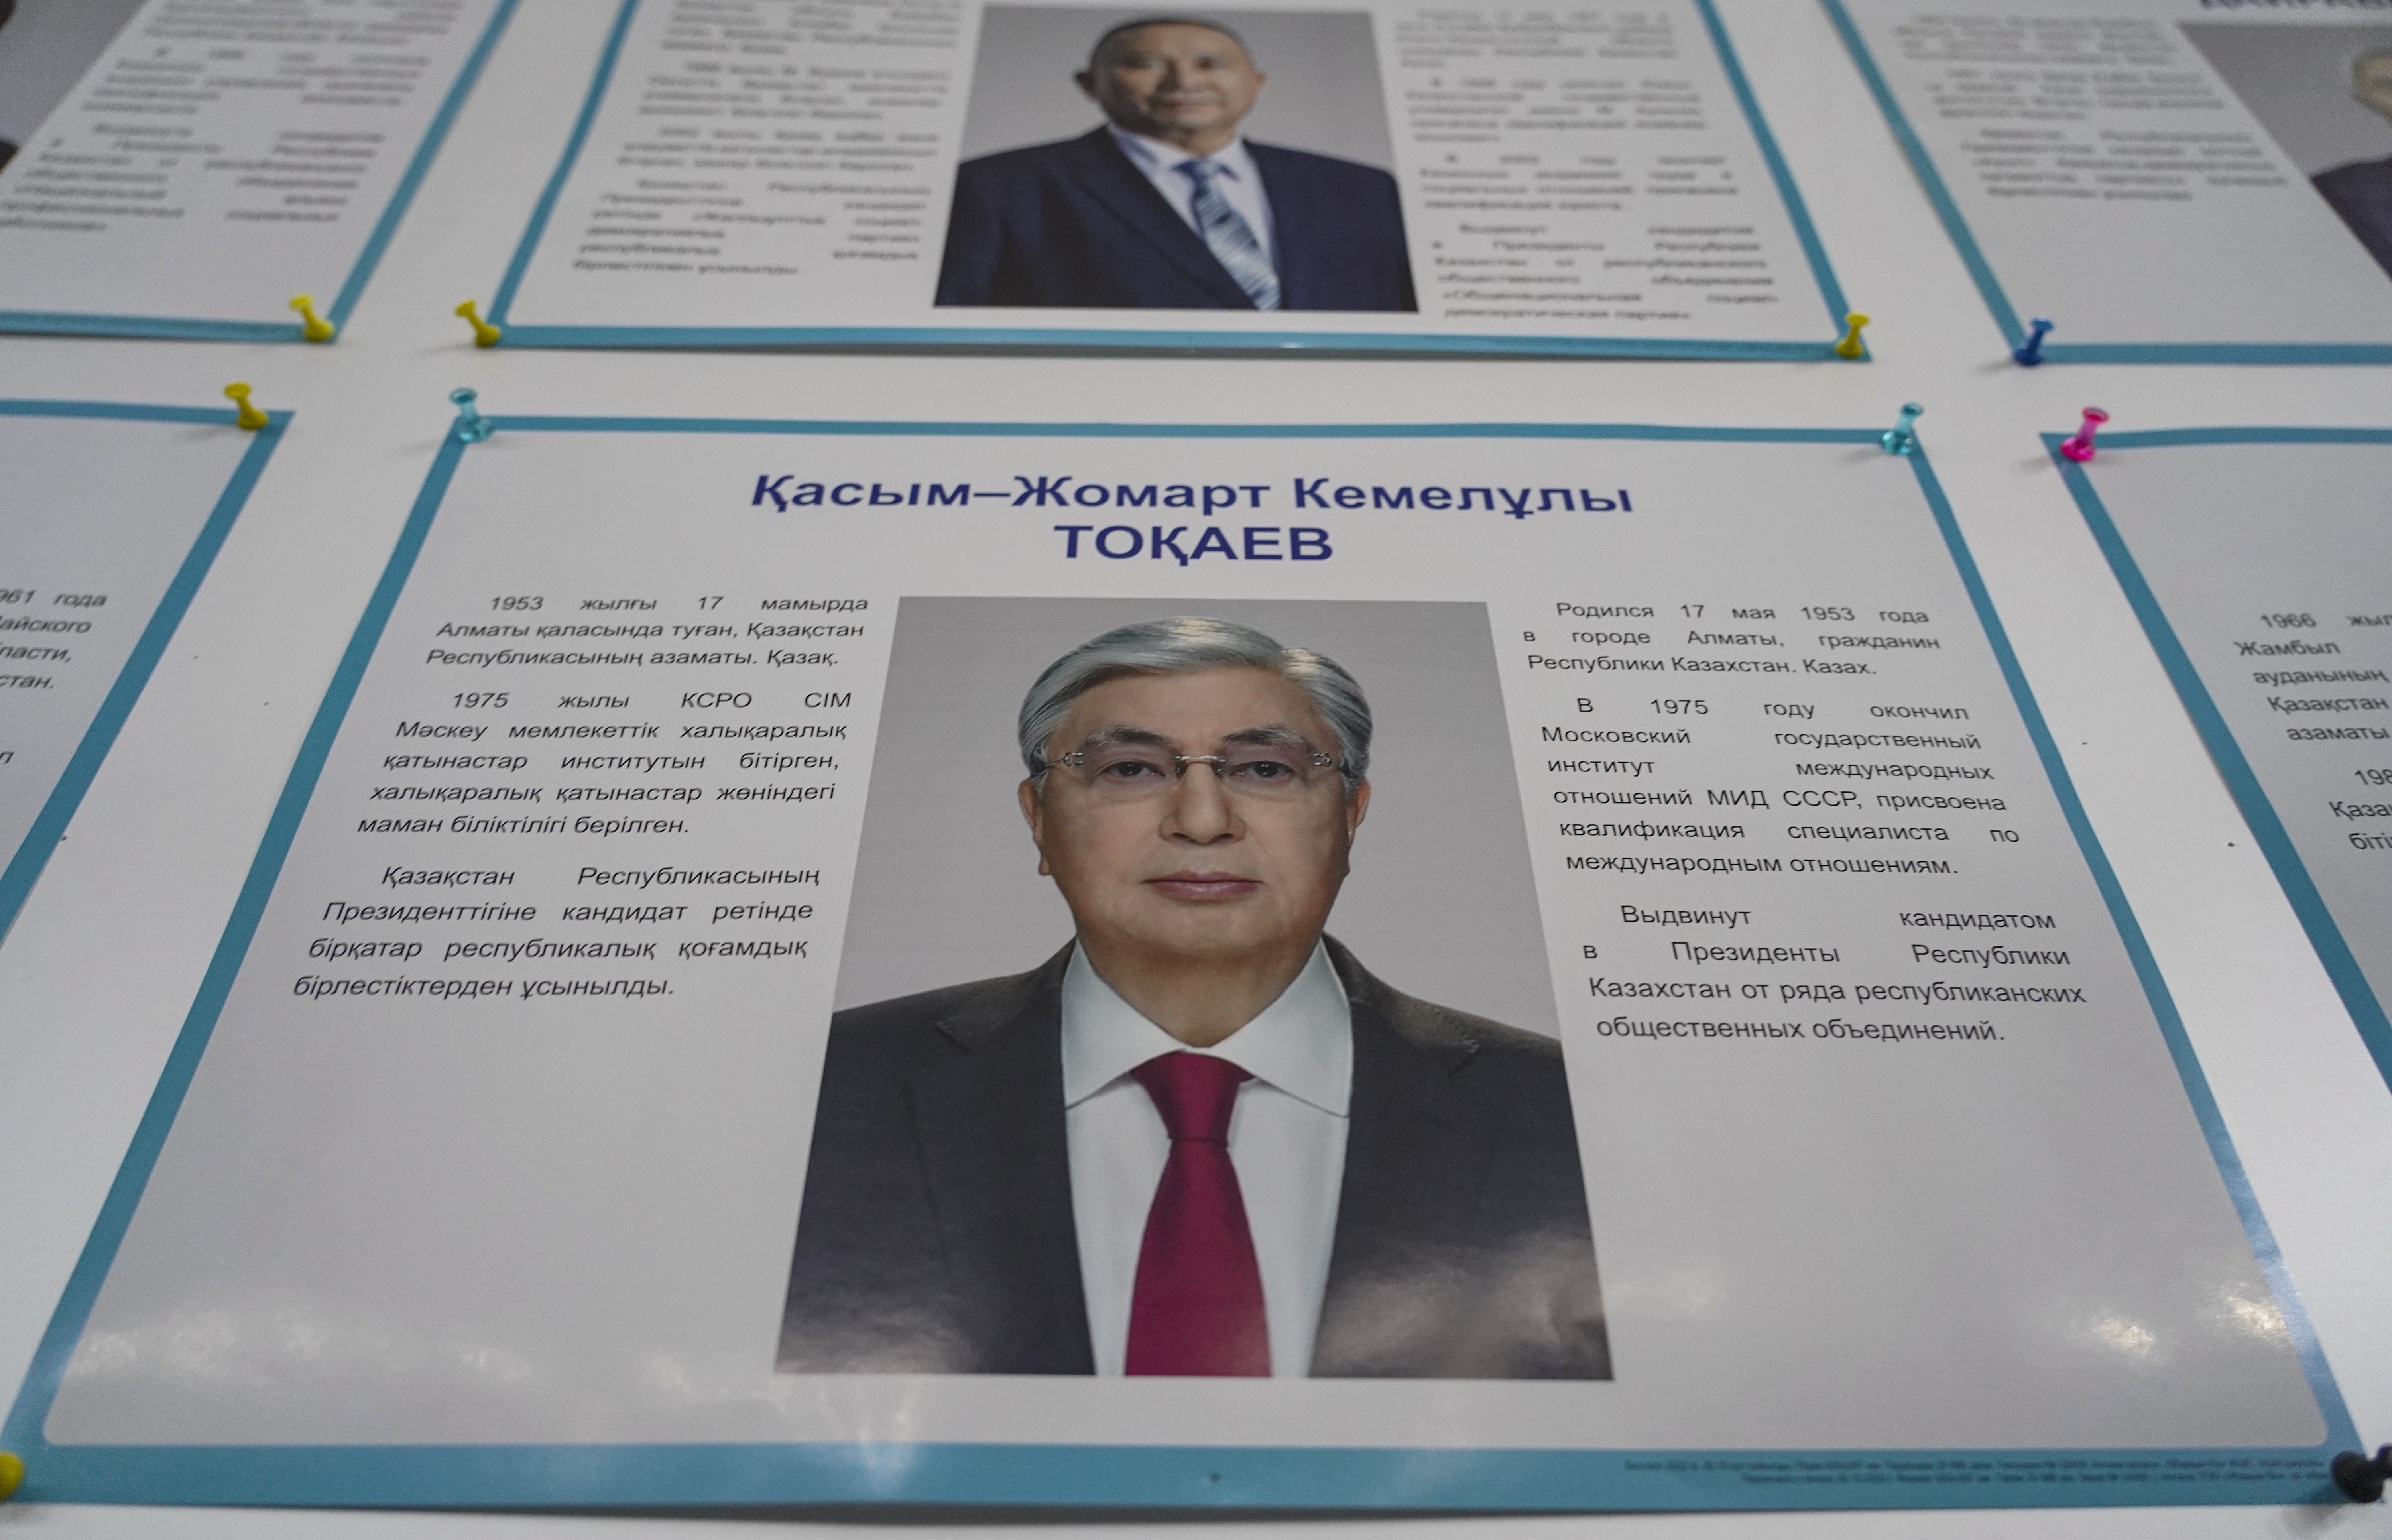 Kazajistán: Tokaev vuelve a ganar unas elecciones sin oposición y apatía generalizada